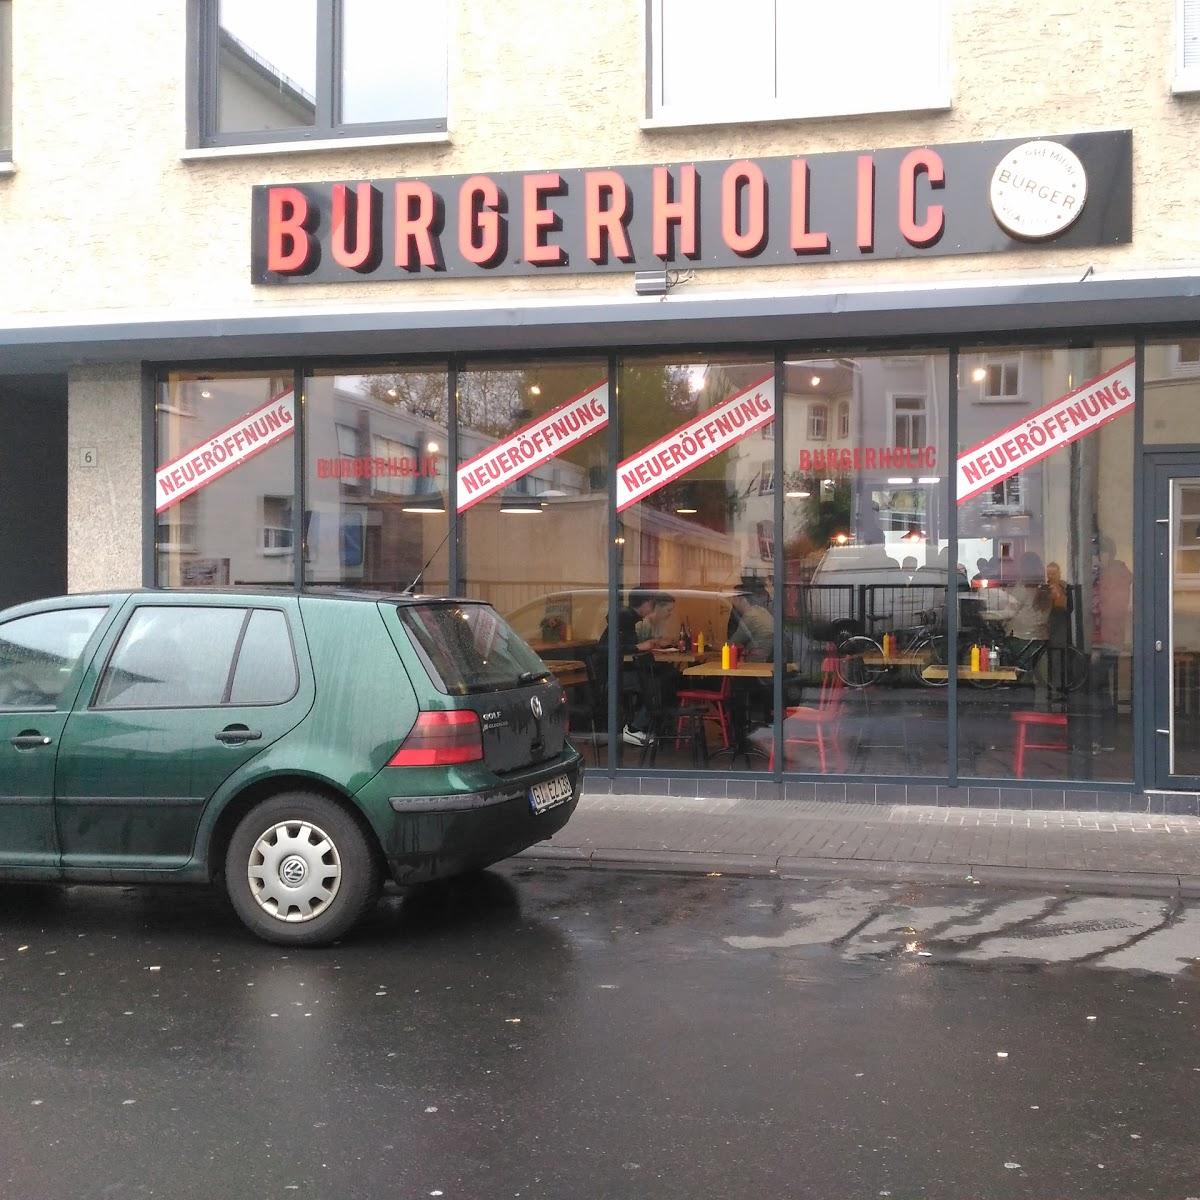 Restaurant "Burgerholic Gießen" in Gießen